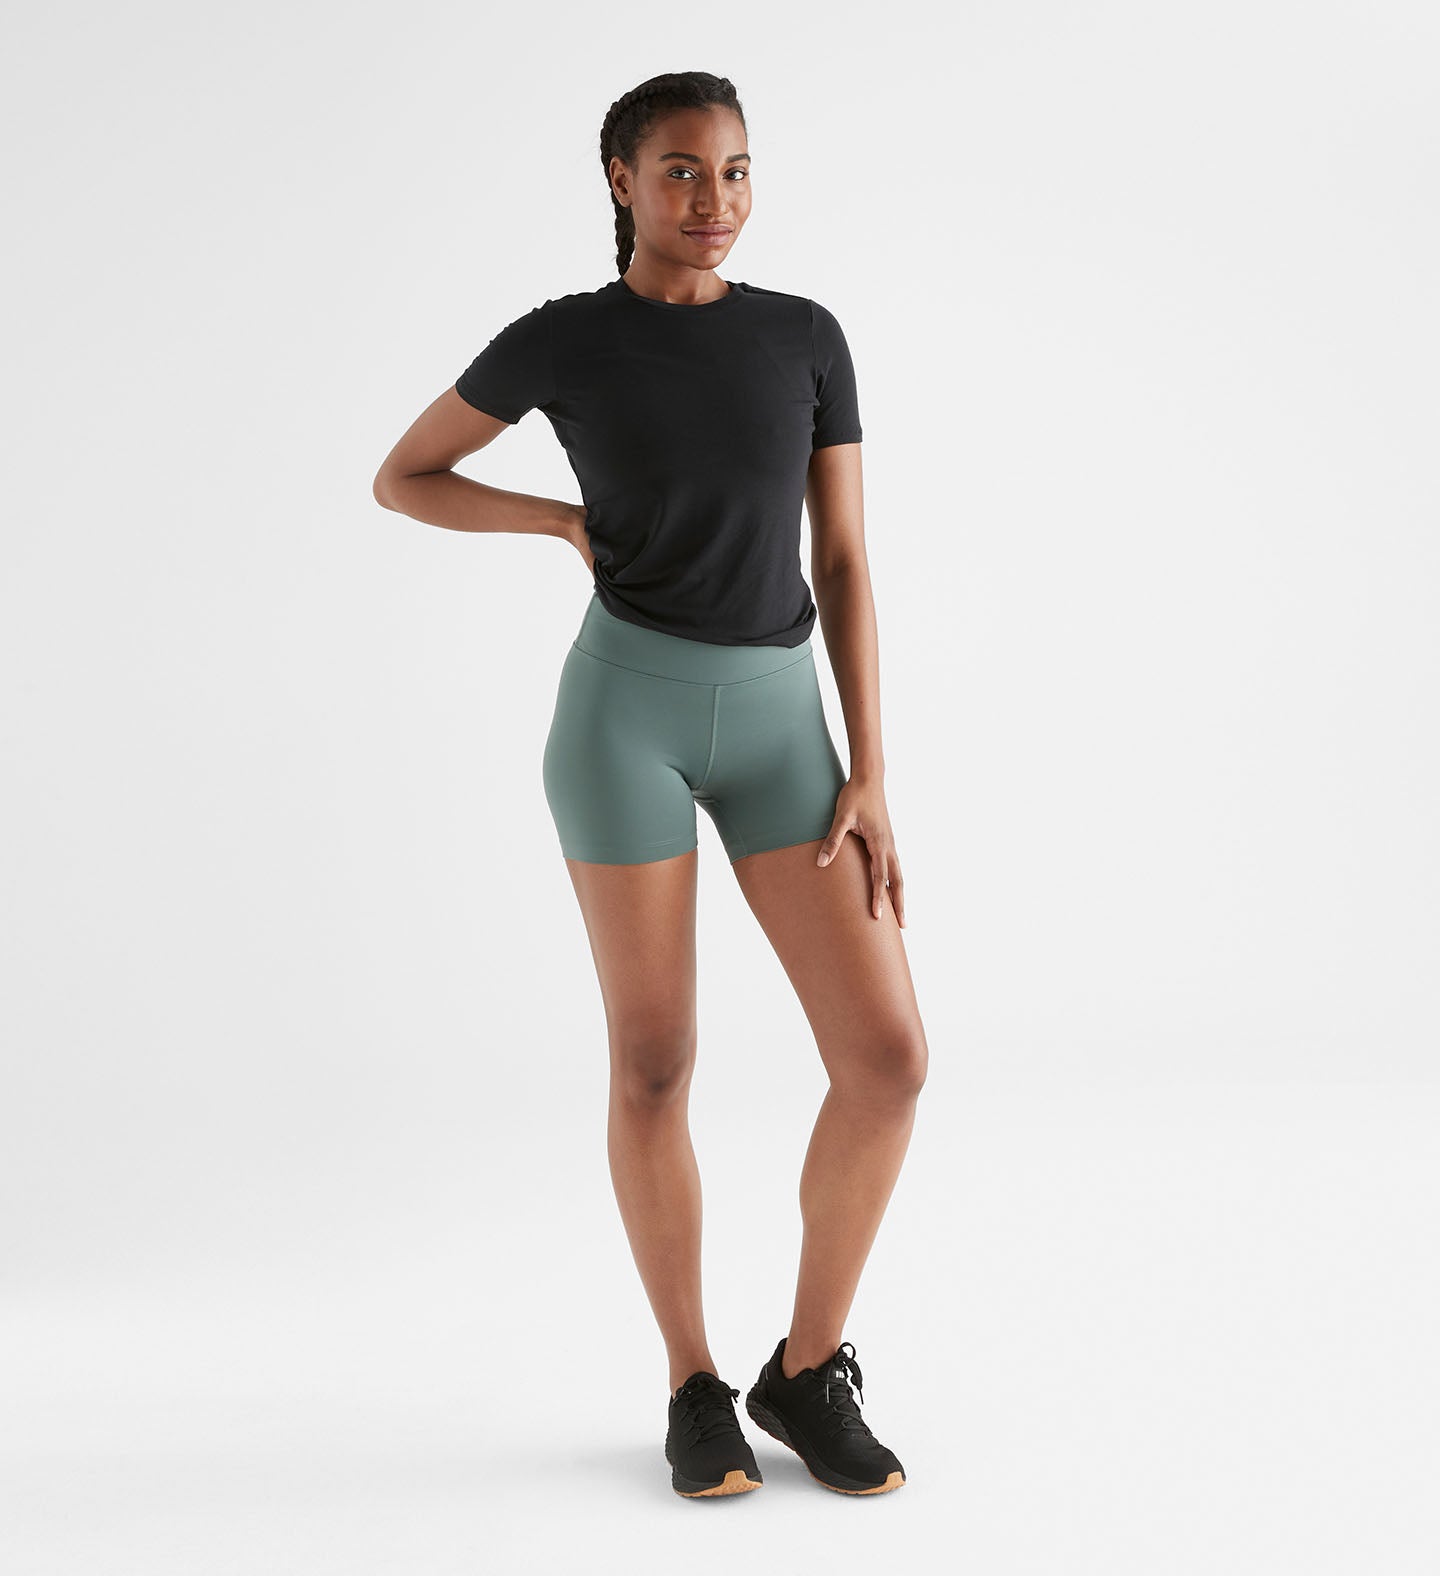 Women's High-Waisted Shorts, Shop Online